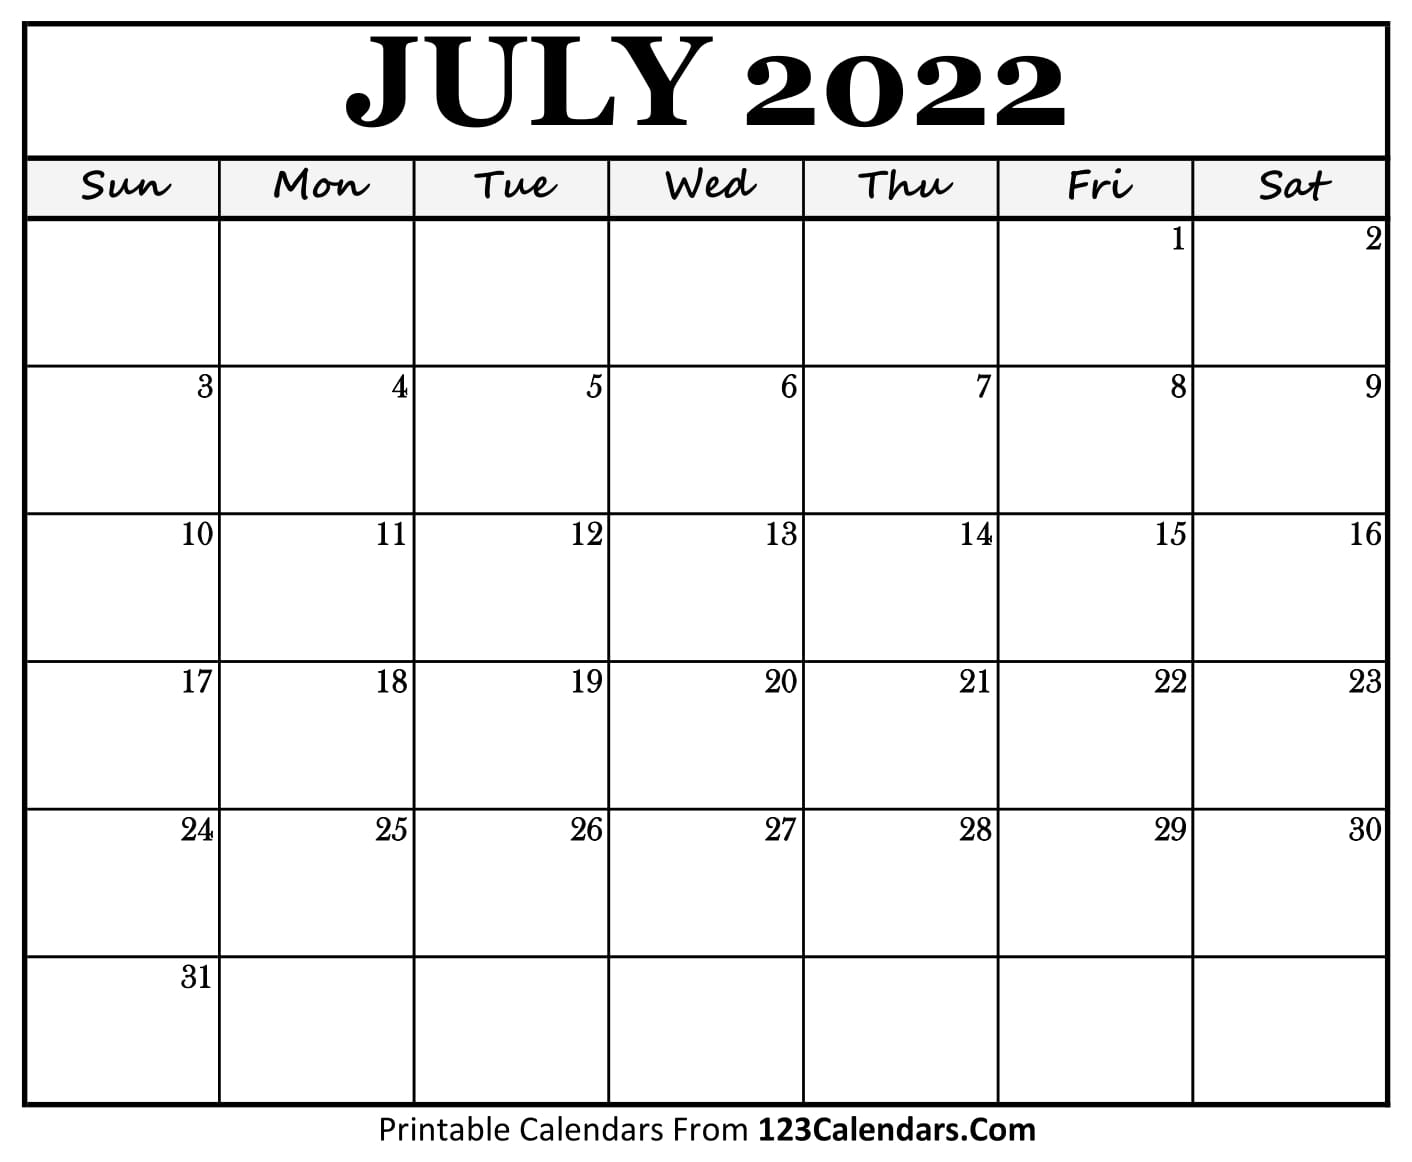 printable july 2022 calendar templates 123calendars com